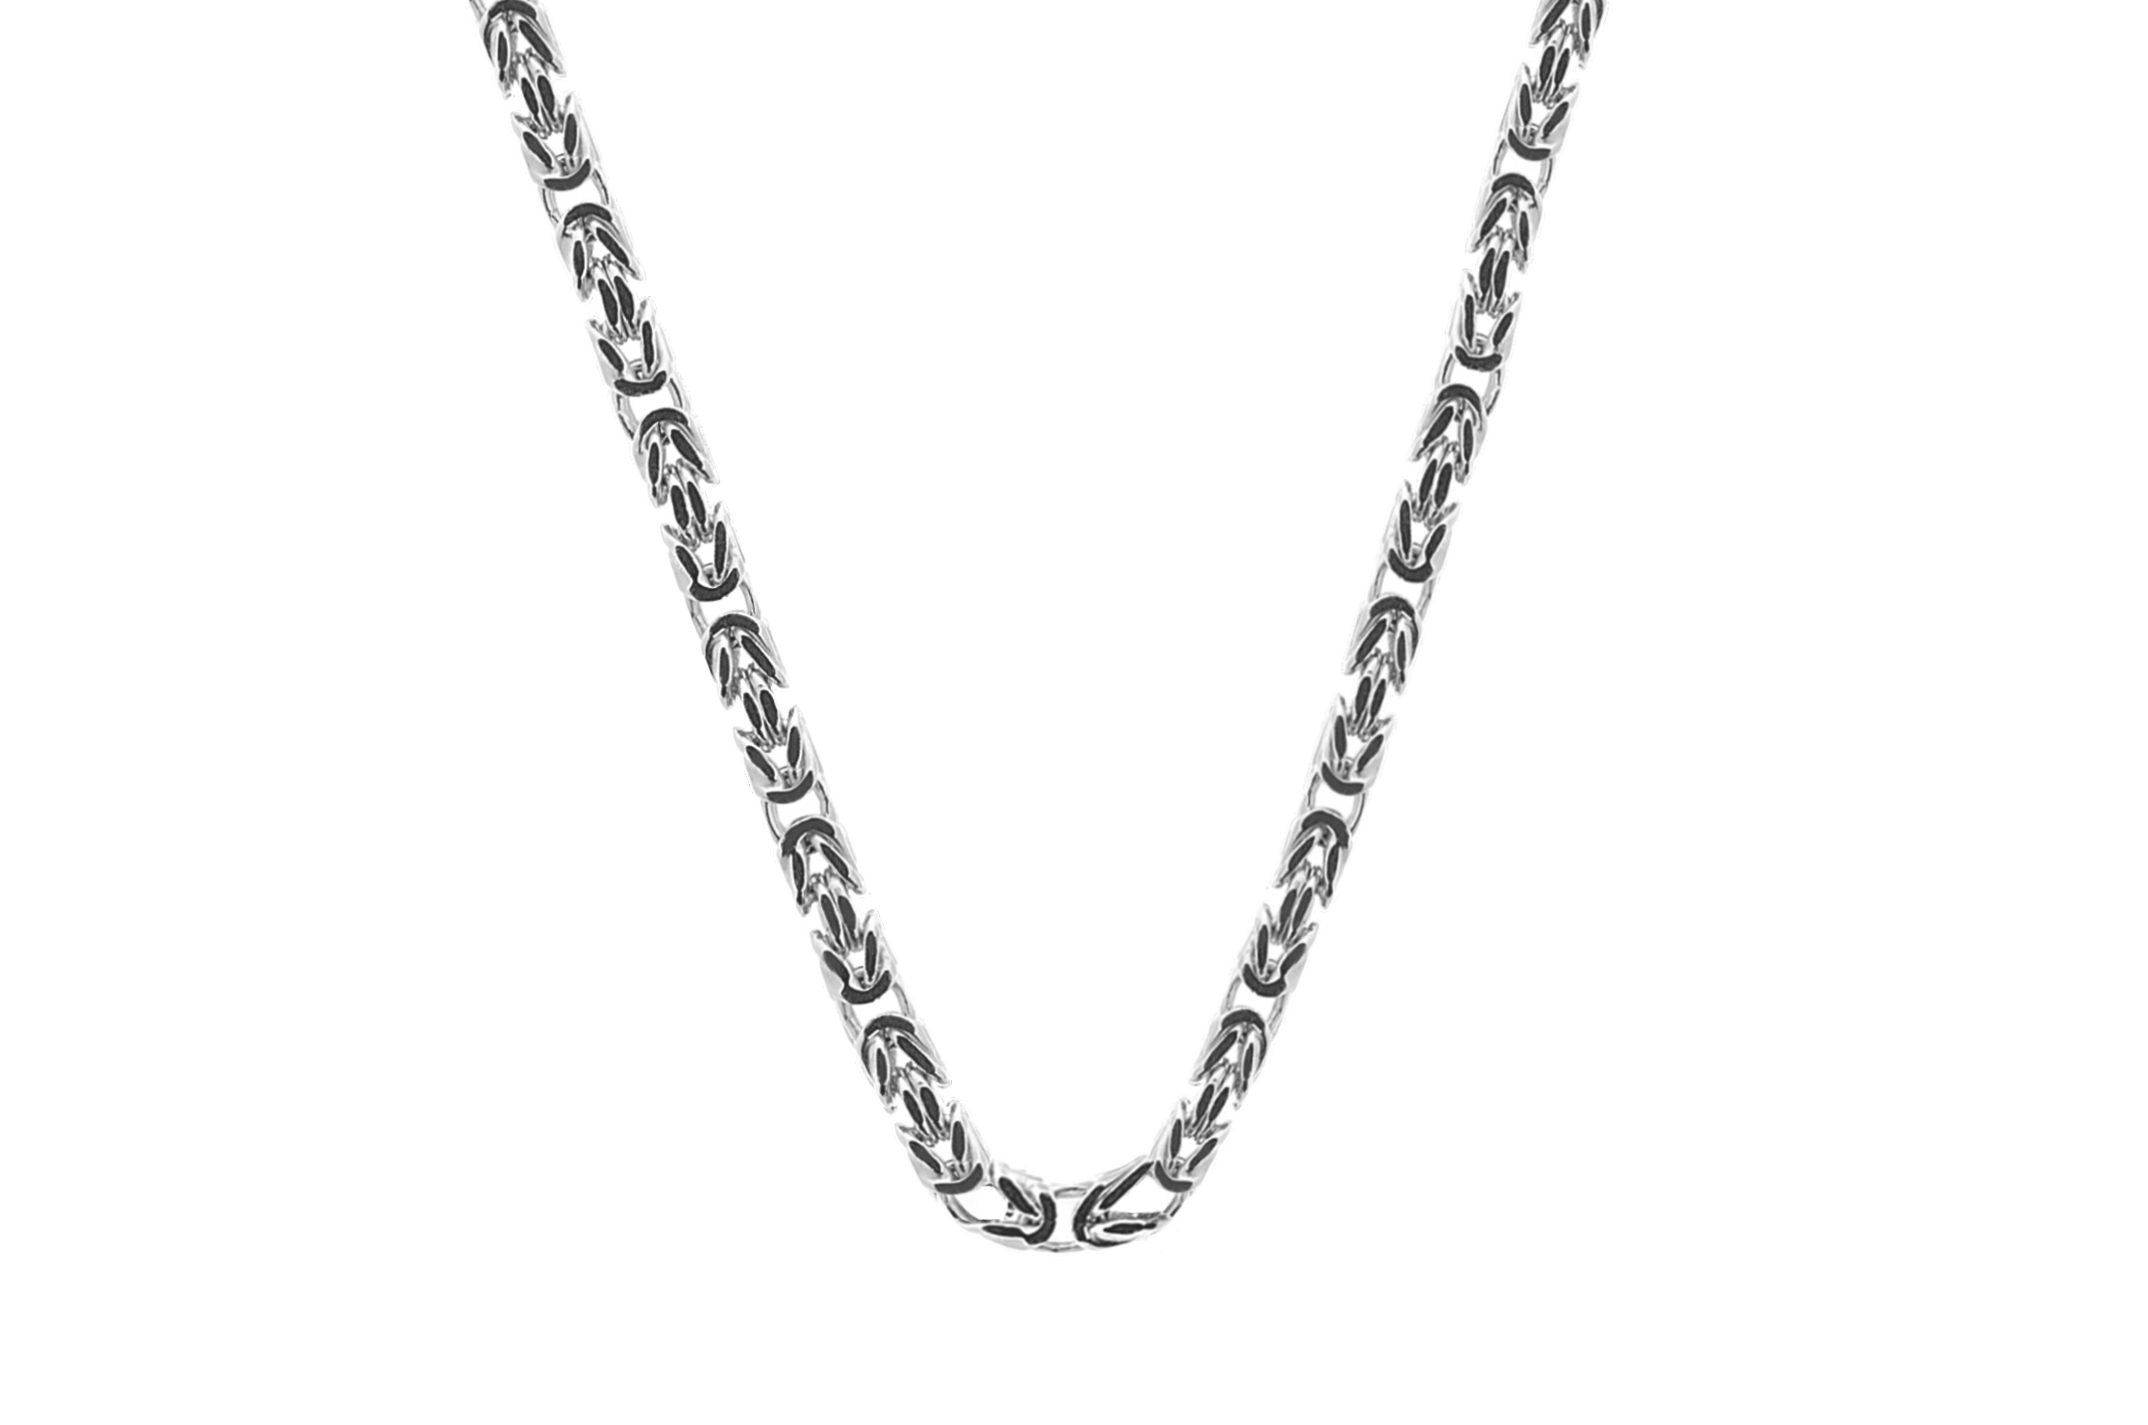 Joia: colar;Material: prata 925;Peso: 21.9 gr;Cor: branco;Medida:48 cm